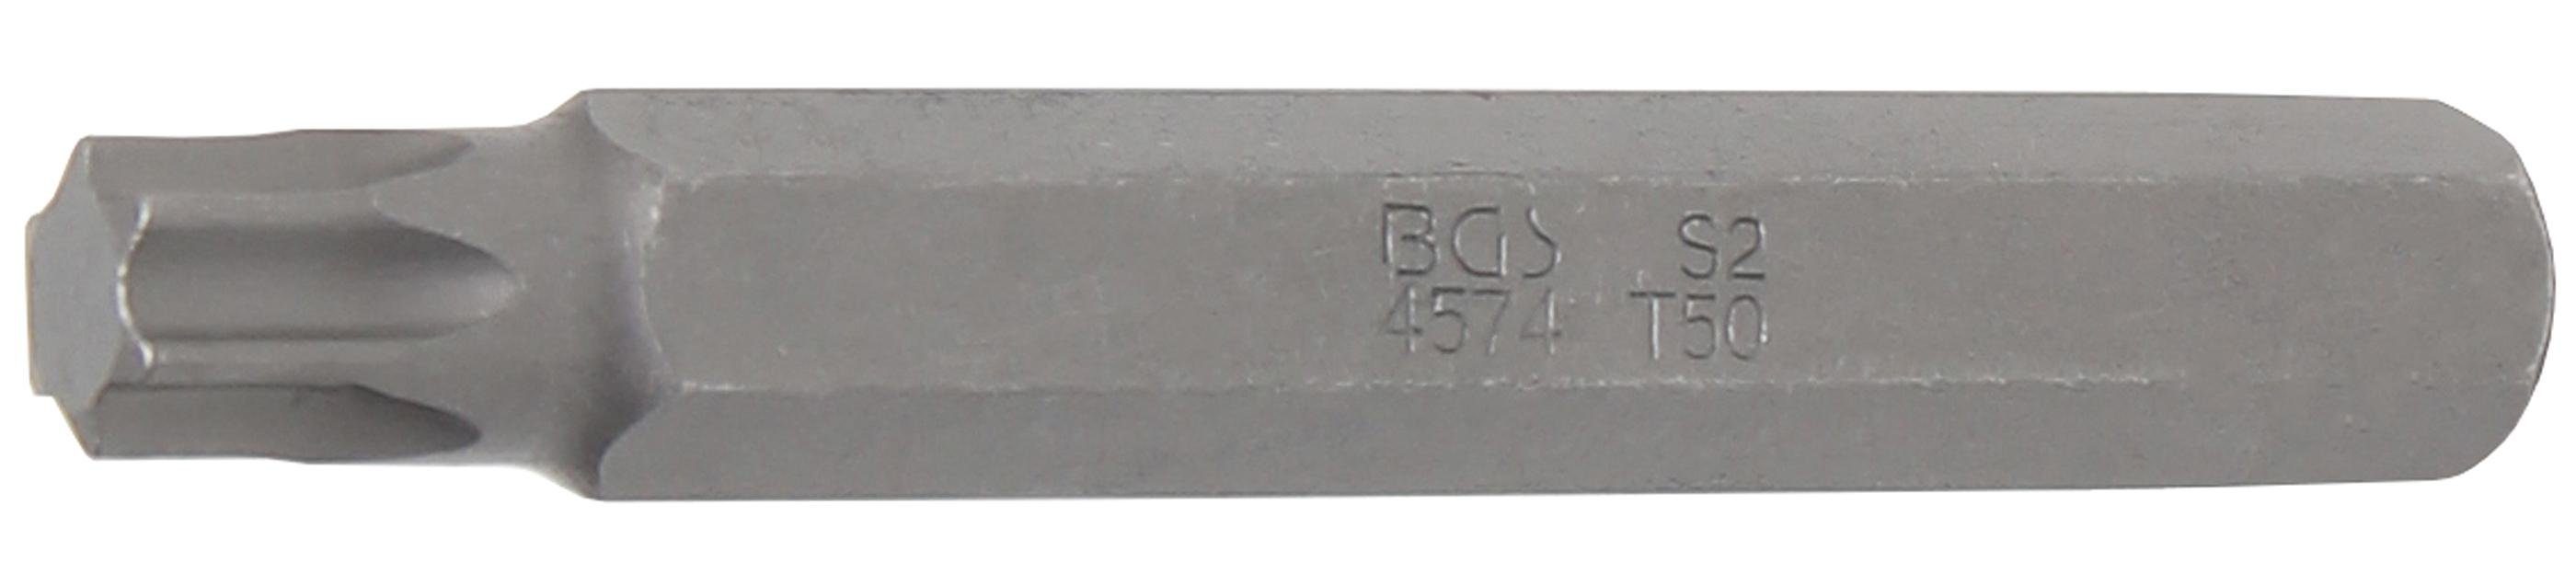 (3/8), (für mm Torx) 75 Länge Bit-Schraubendreher BGS T-Profil Antrieb Bit, Außensechskant 10 mm, T50 technic